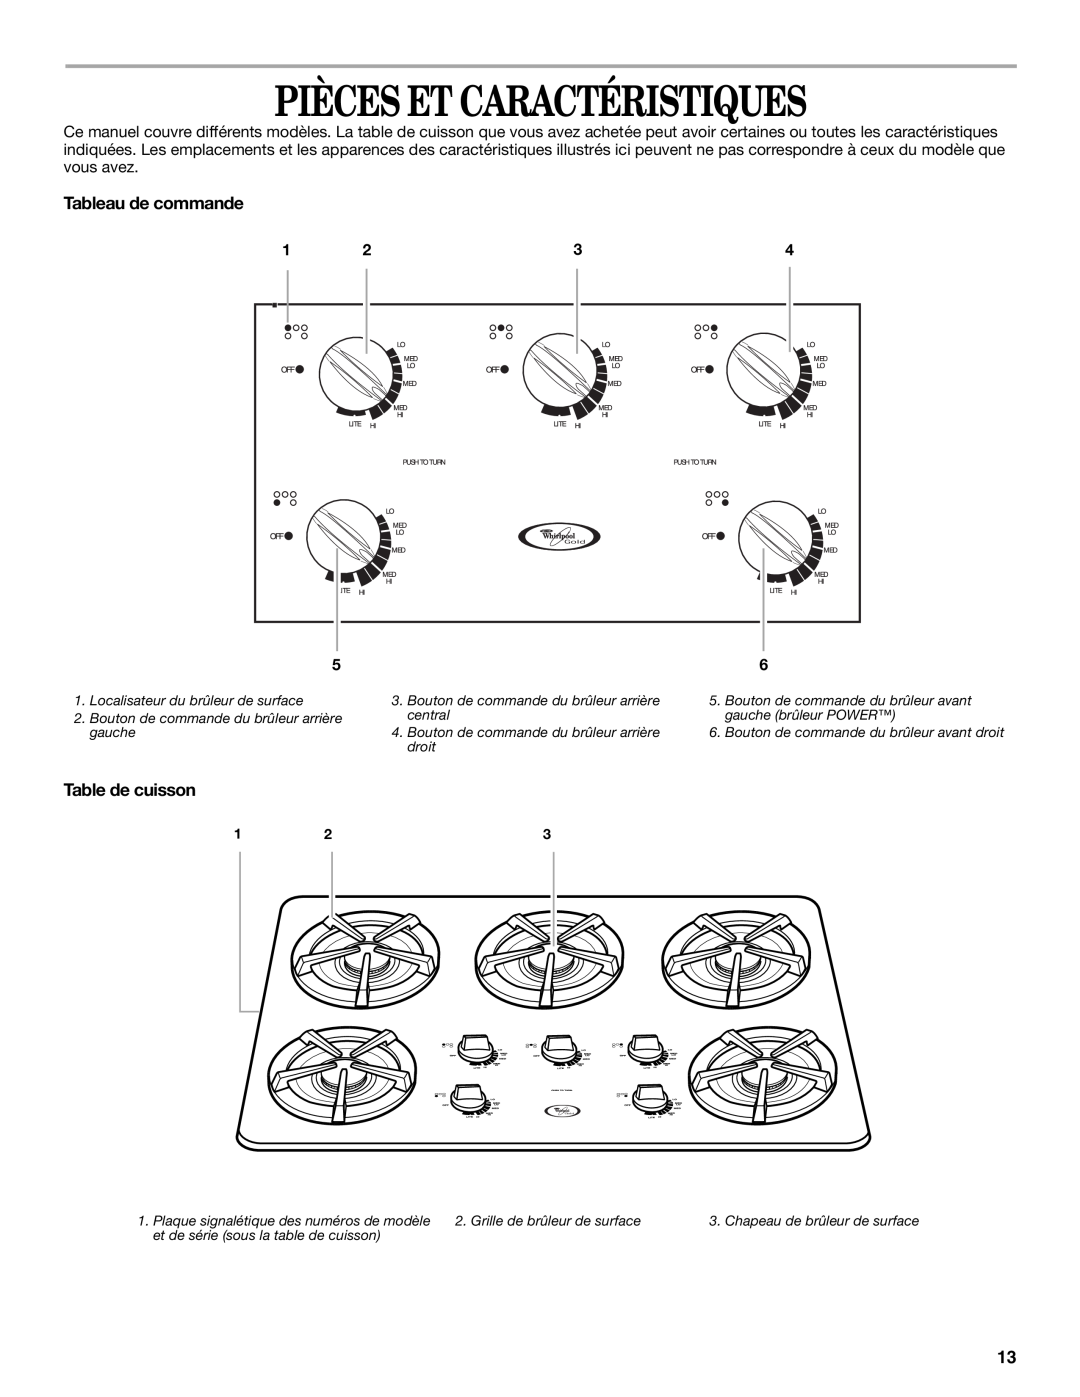 Whirlpool GLT3034, SCS3004, GLT3634 manual Pièces Et Caractéristiques, Tableau de commande, Table de cuisson 